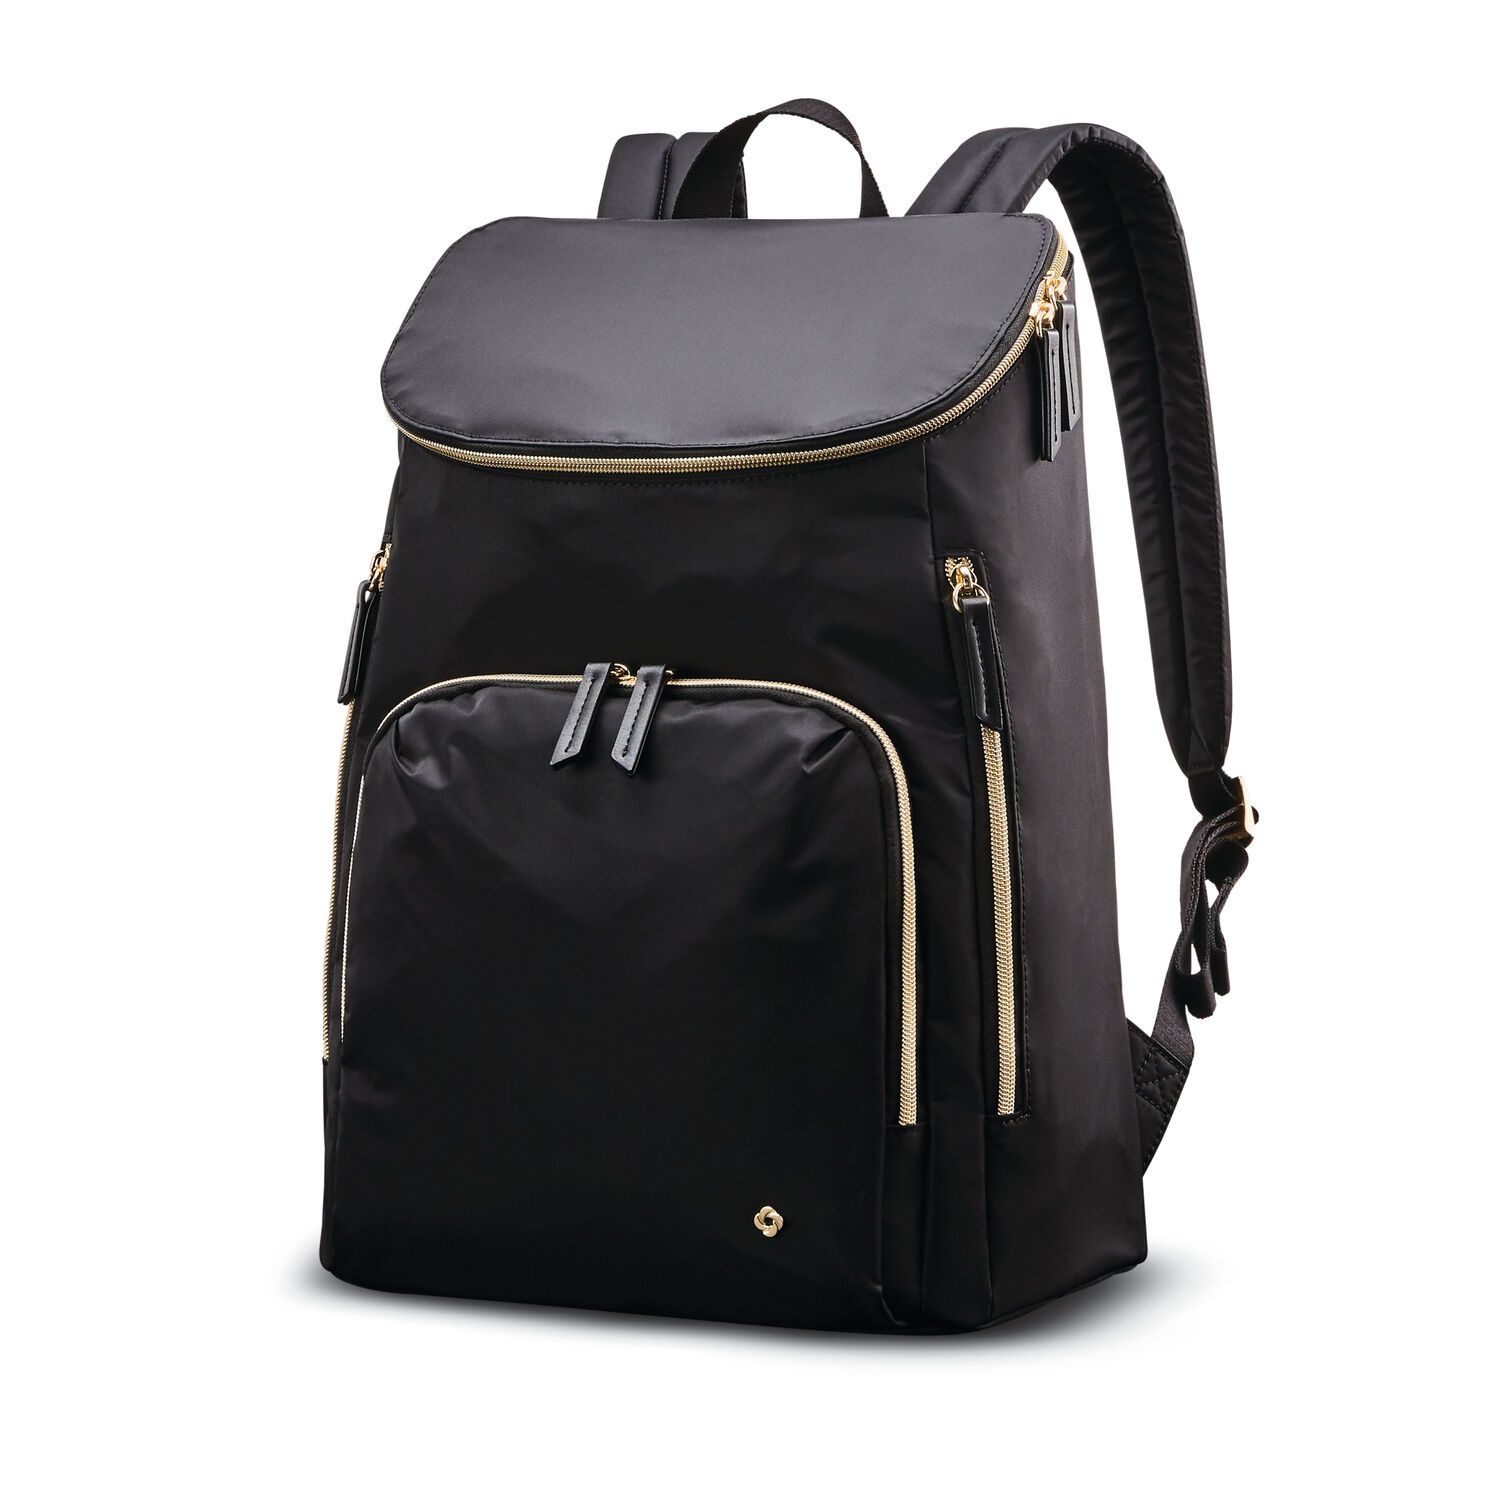 Samsonite Mobile Solution Deluxe Backpack - Black